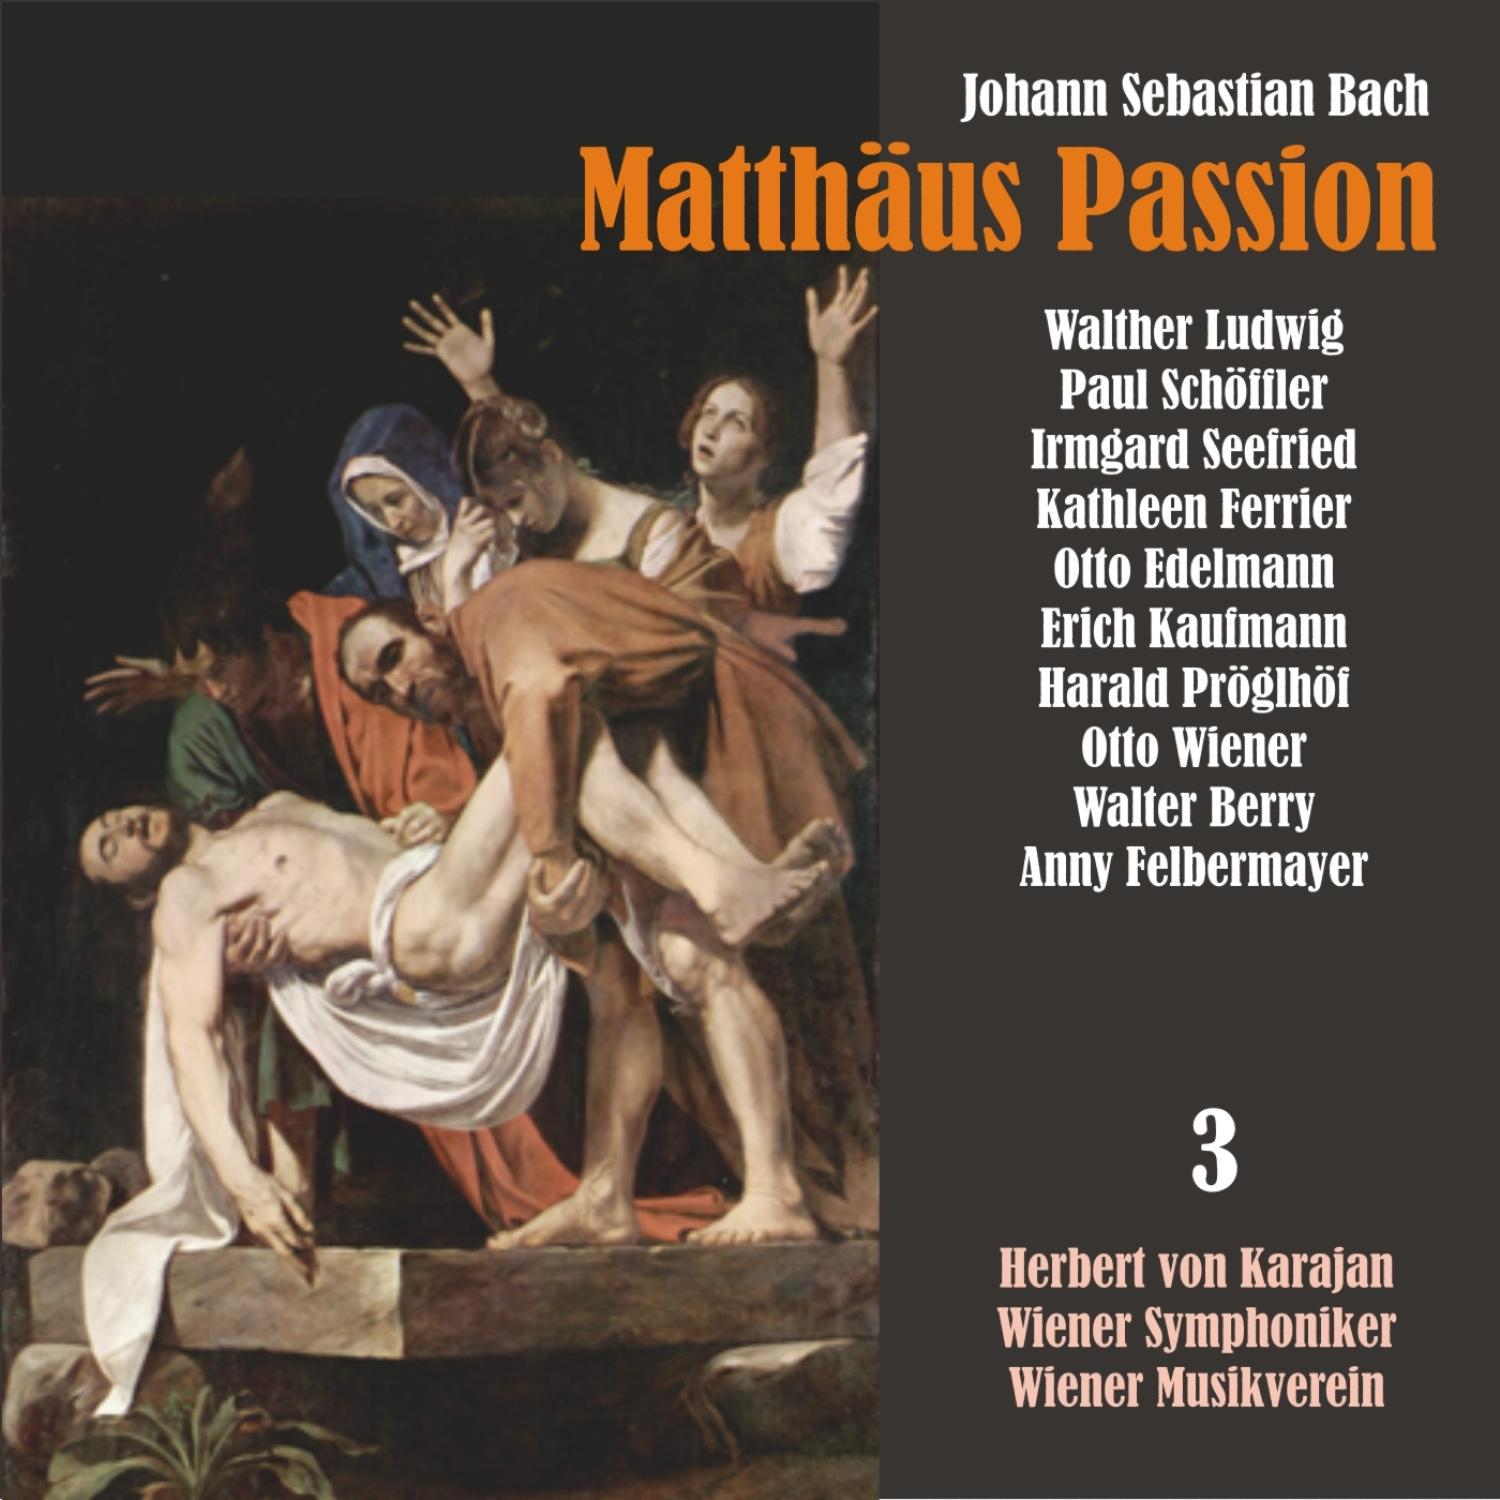 Matth us Passion, BWV 244: " Wie wunderbarlich 1st doch diese Strafe!"